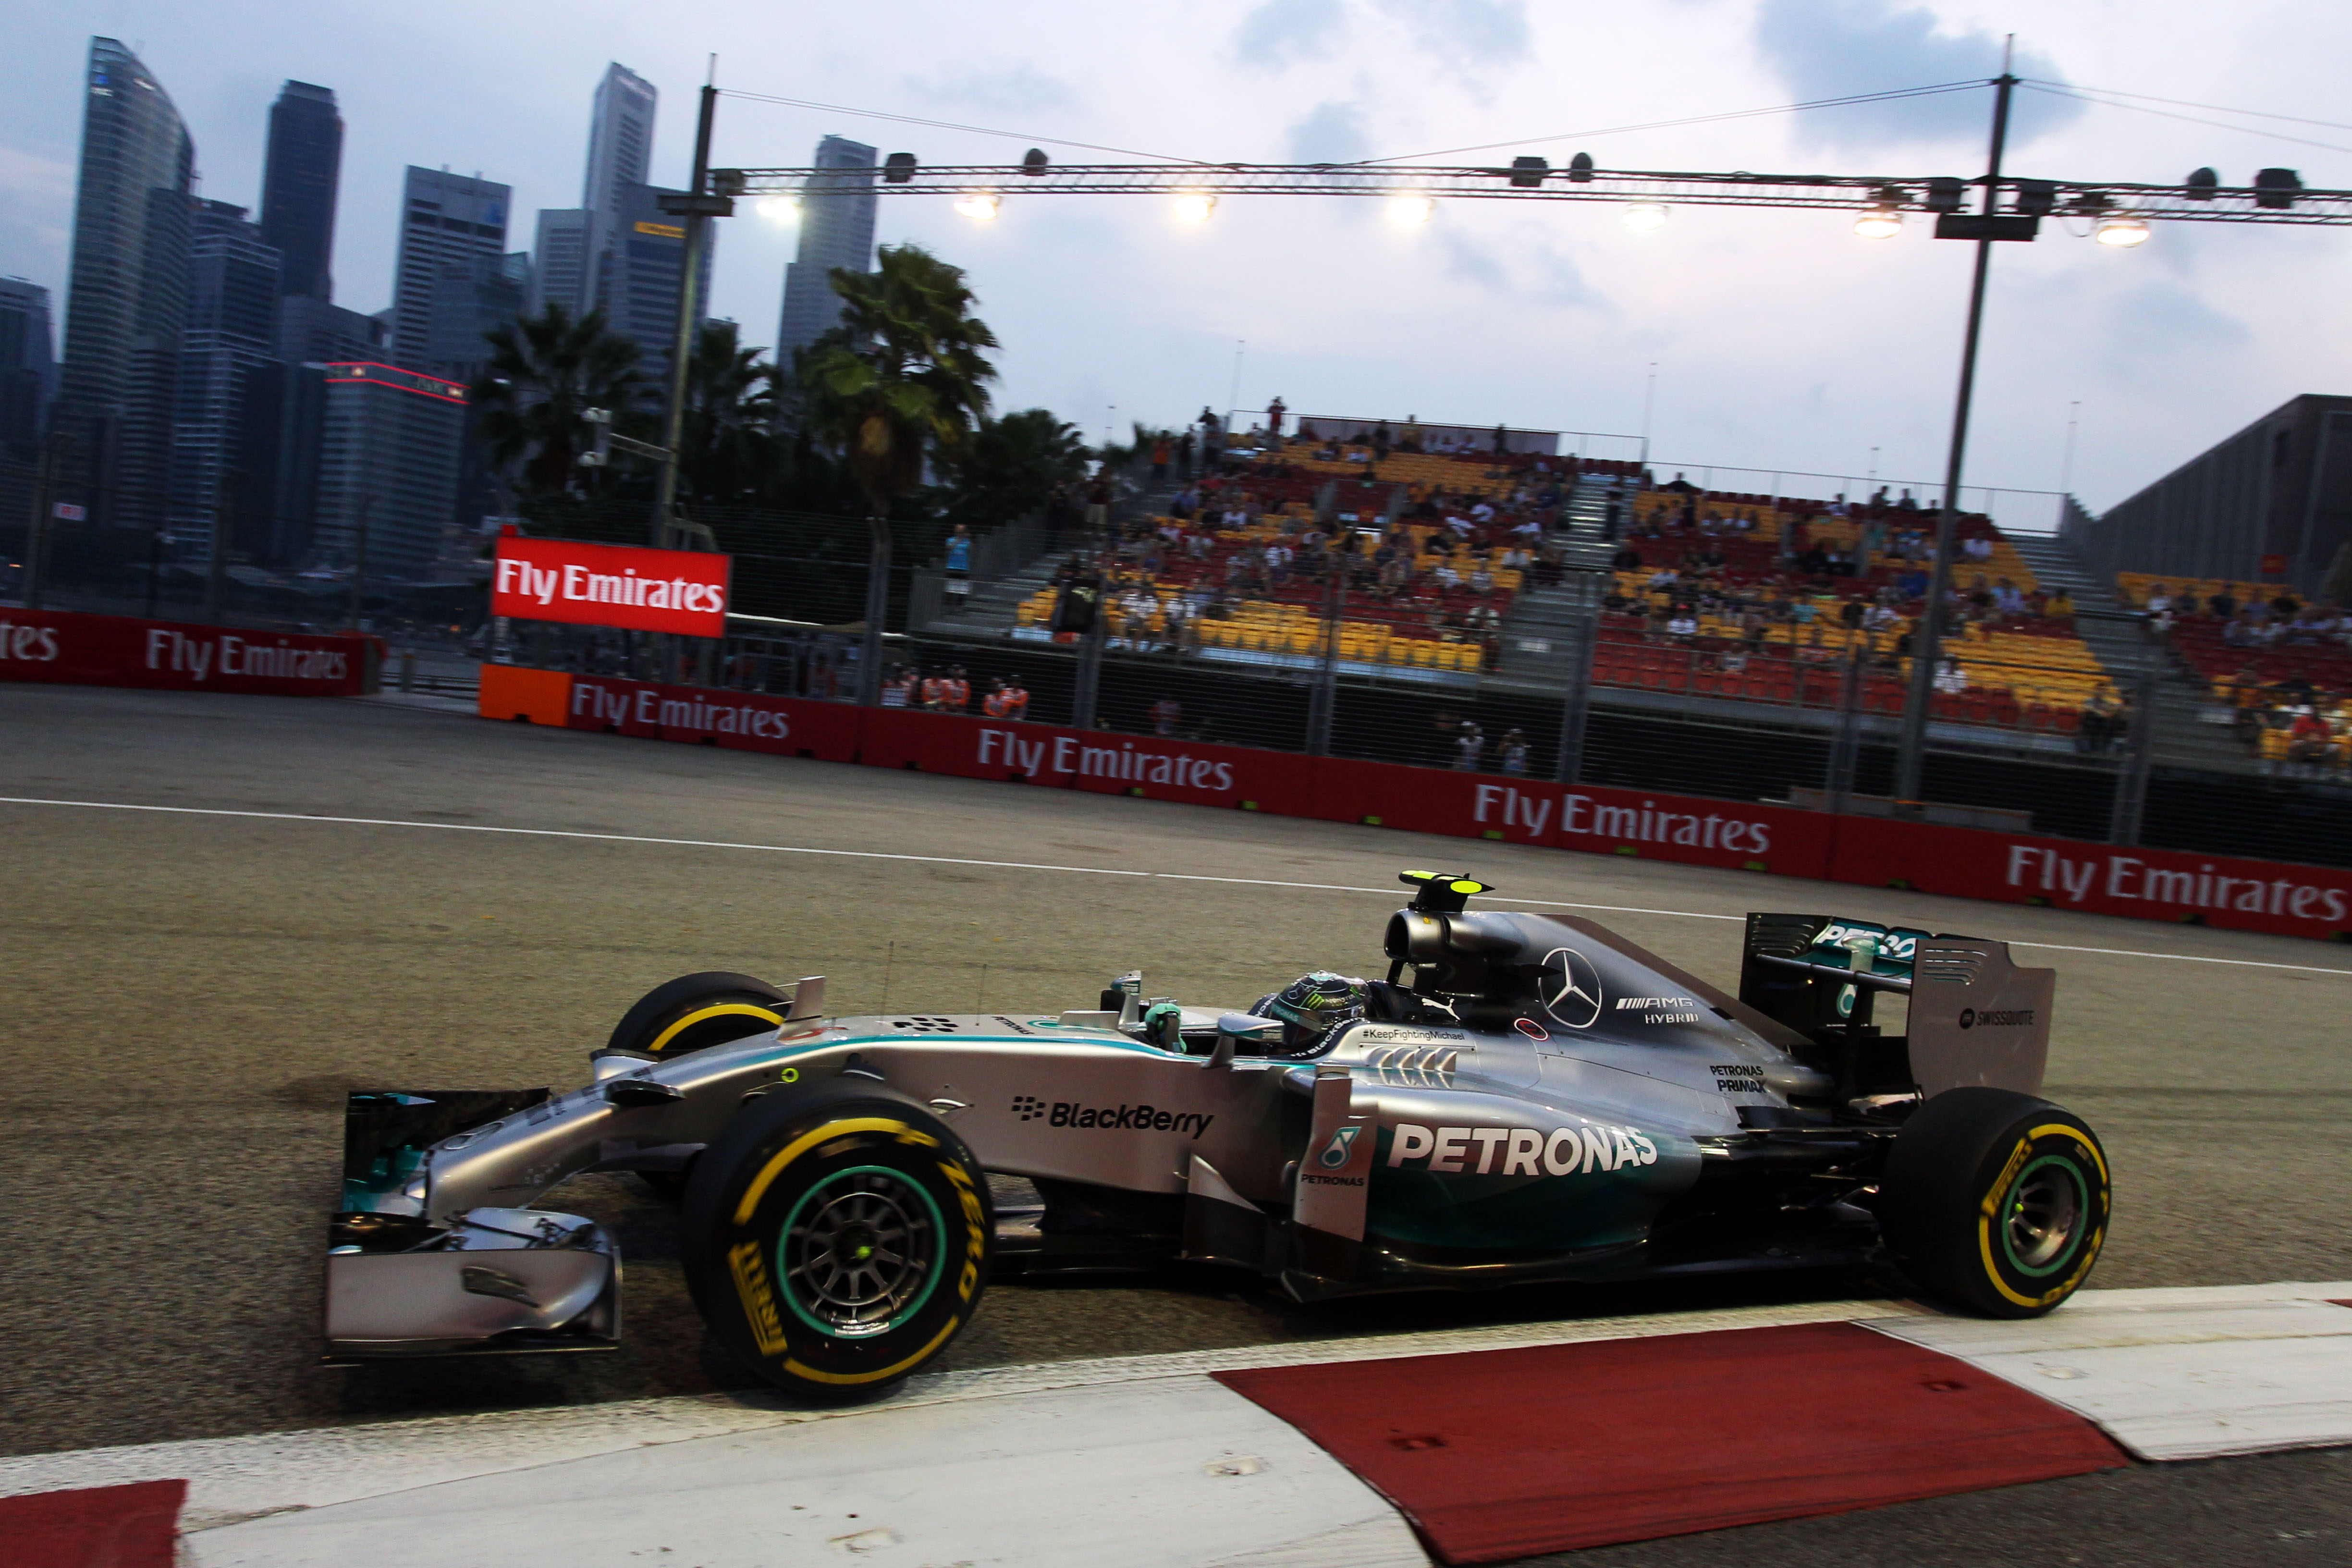 Hamilton de snelste, maar geen zorgen bij Rosberg